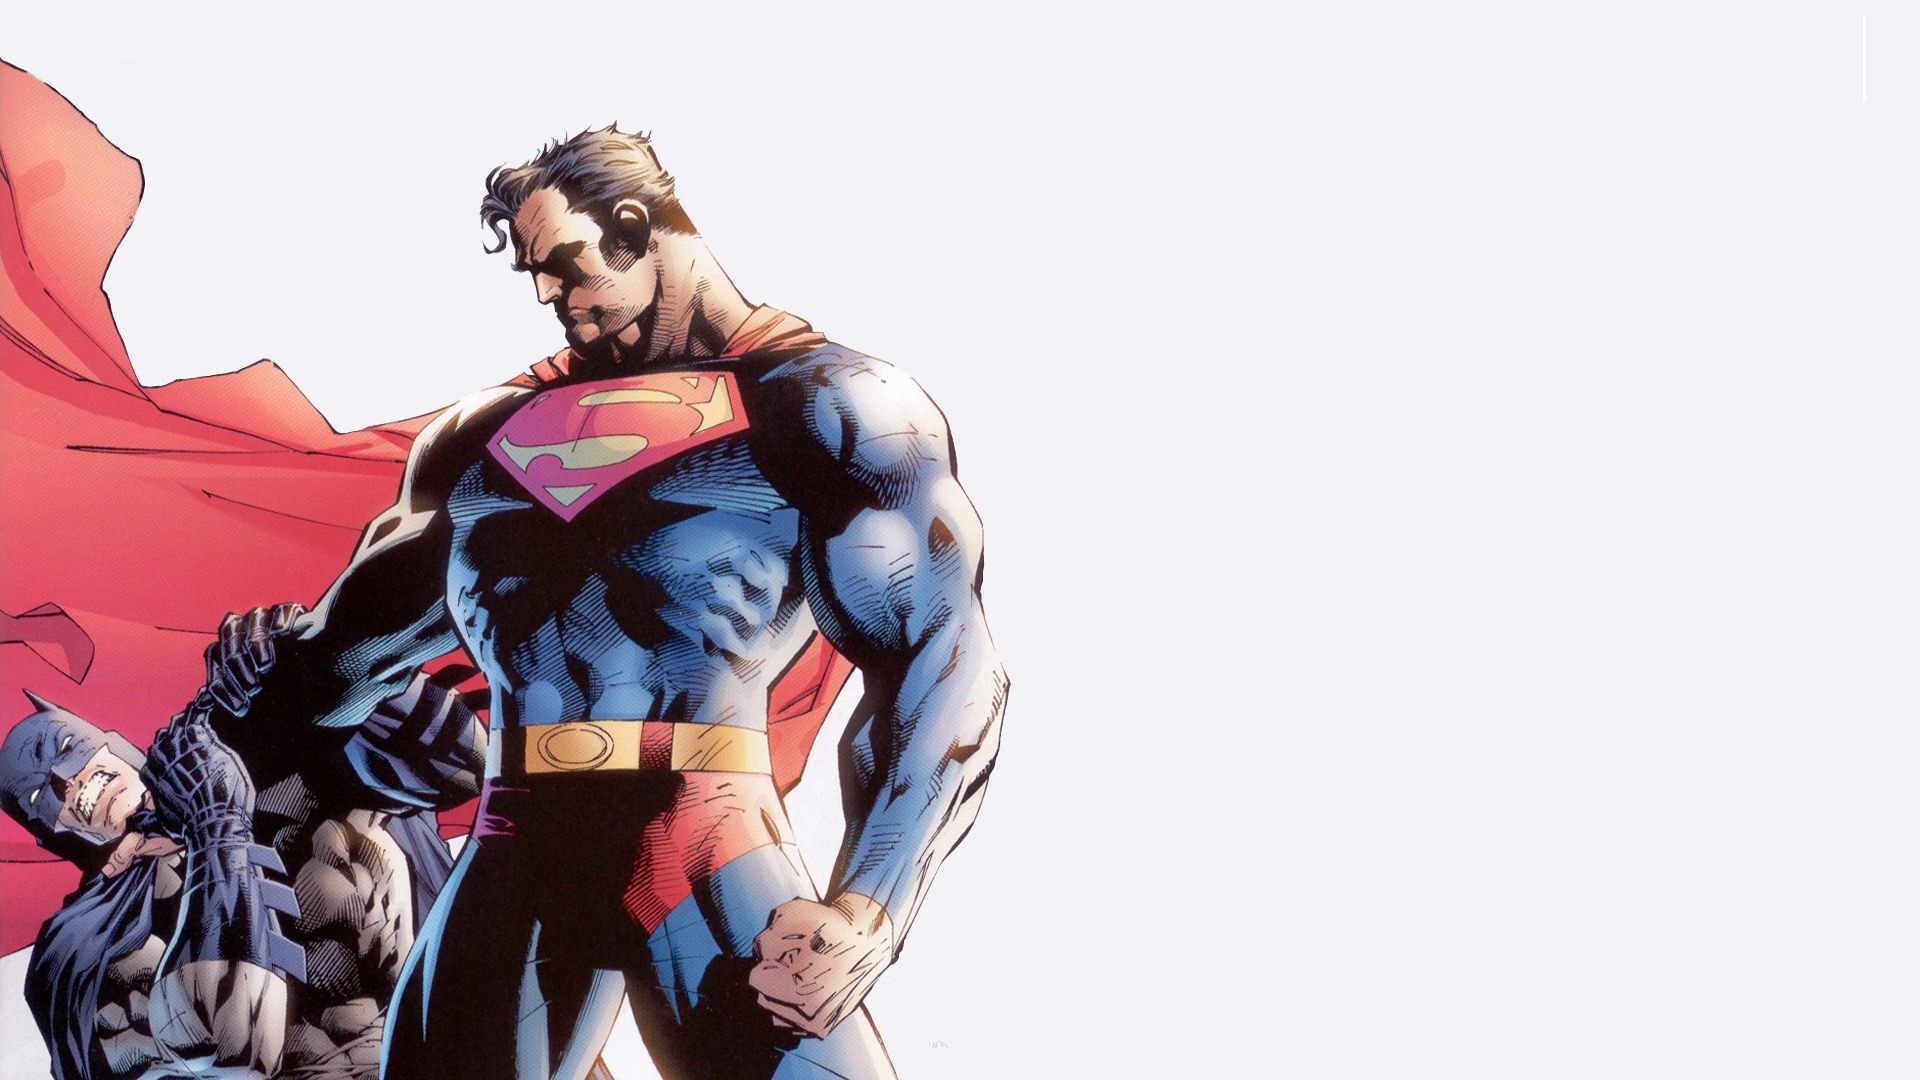 General 1920x1080 DC Comics Batman Superman superhero